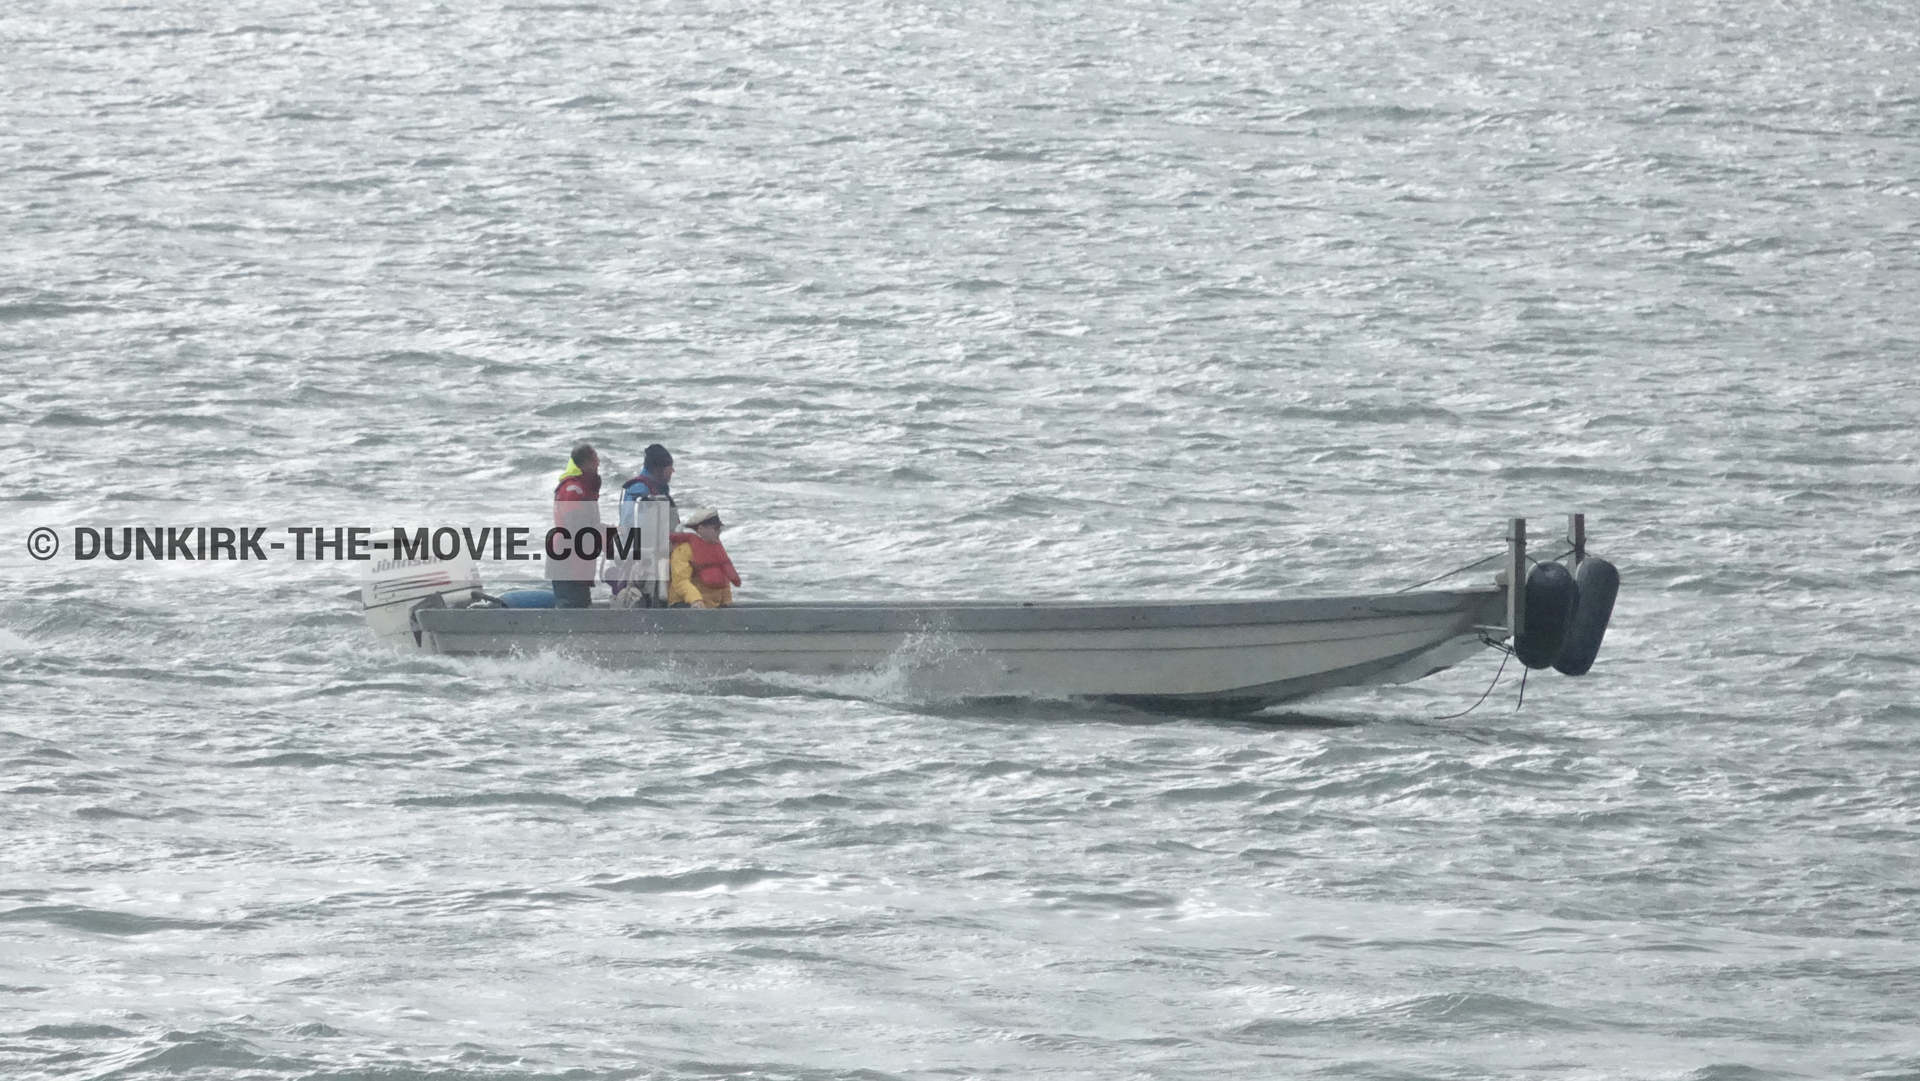 Fotos con equipo técnica,  durante el rodaje de la película Dunkerque de Nolan